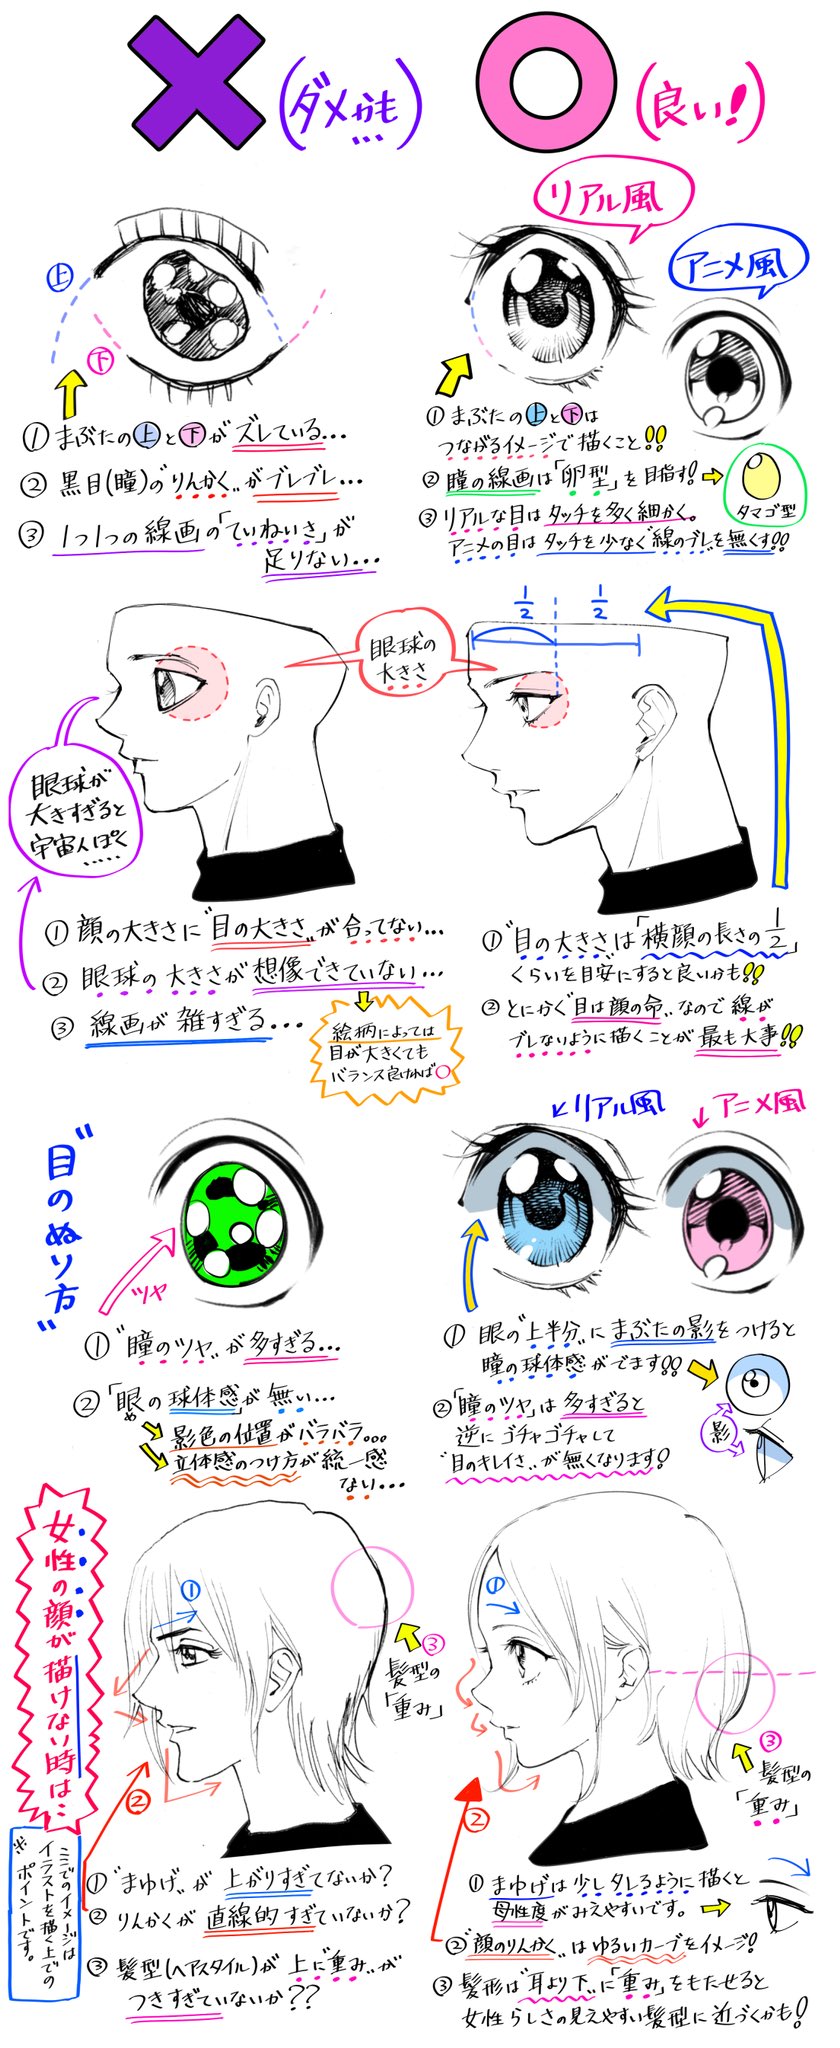 吉村拓也 イラスト講座 目の描き方 男と女 リアル眼とアニメ眼 を 描きたいときの ダメなこと と 良いこと